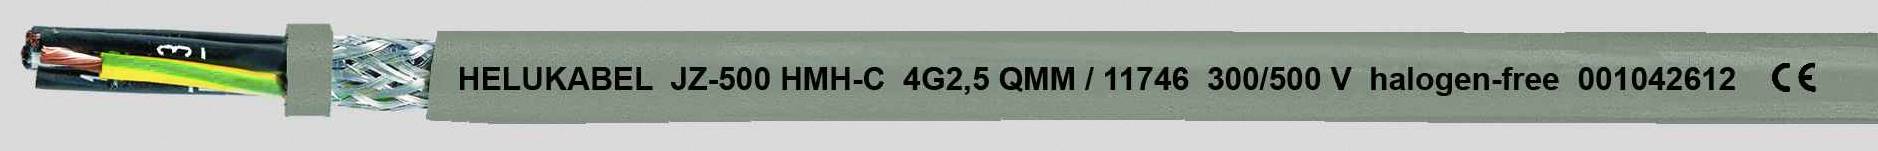 HELUKABEL JZ-500 HMH-C Steuerleitung 7 G 0.50 mm² Grau 11660-1000 1000 m